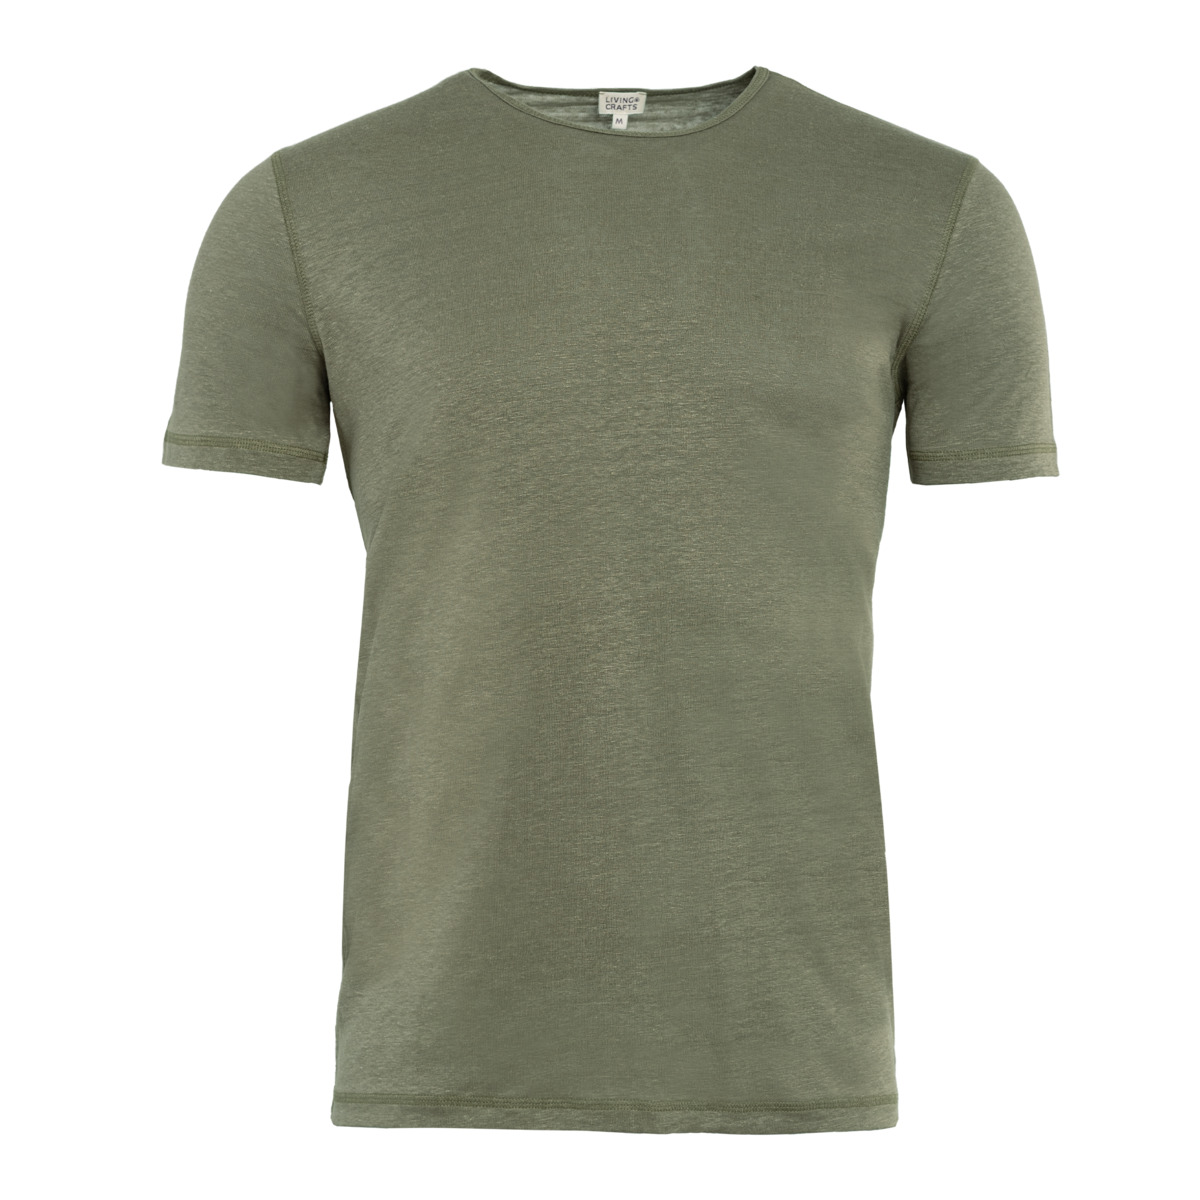 Grün Leinen T-Shirt, ANDY